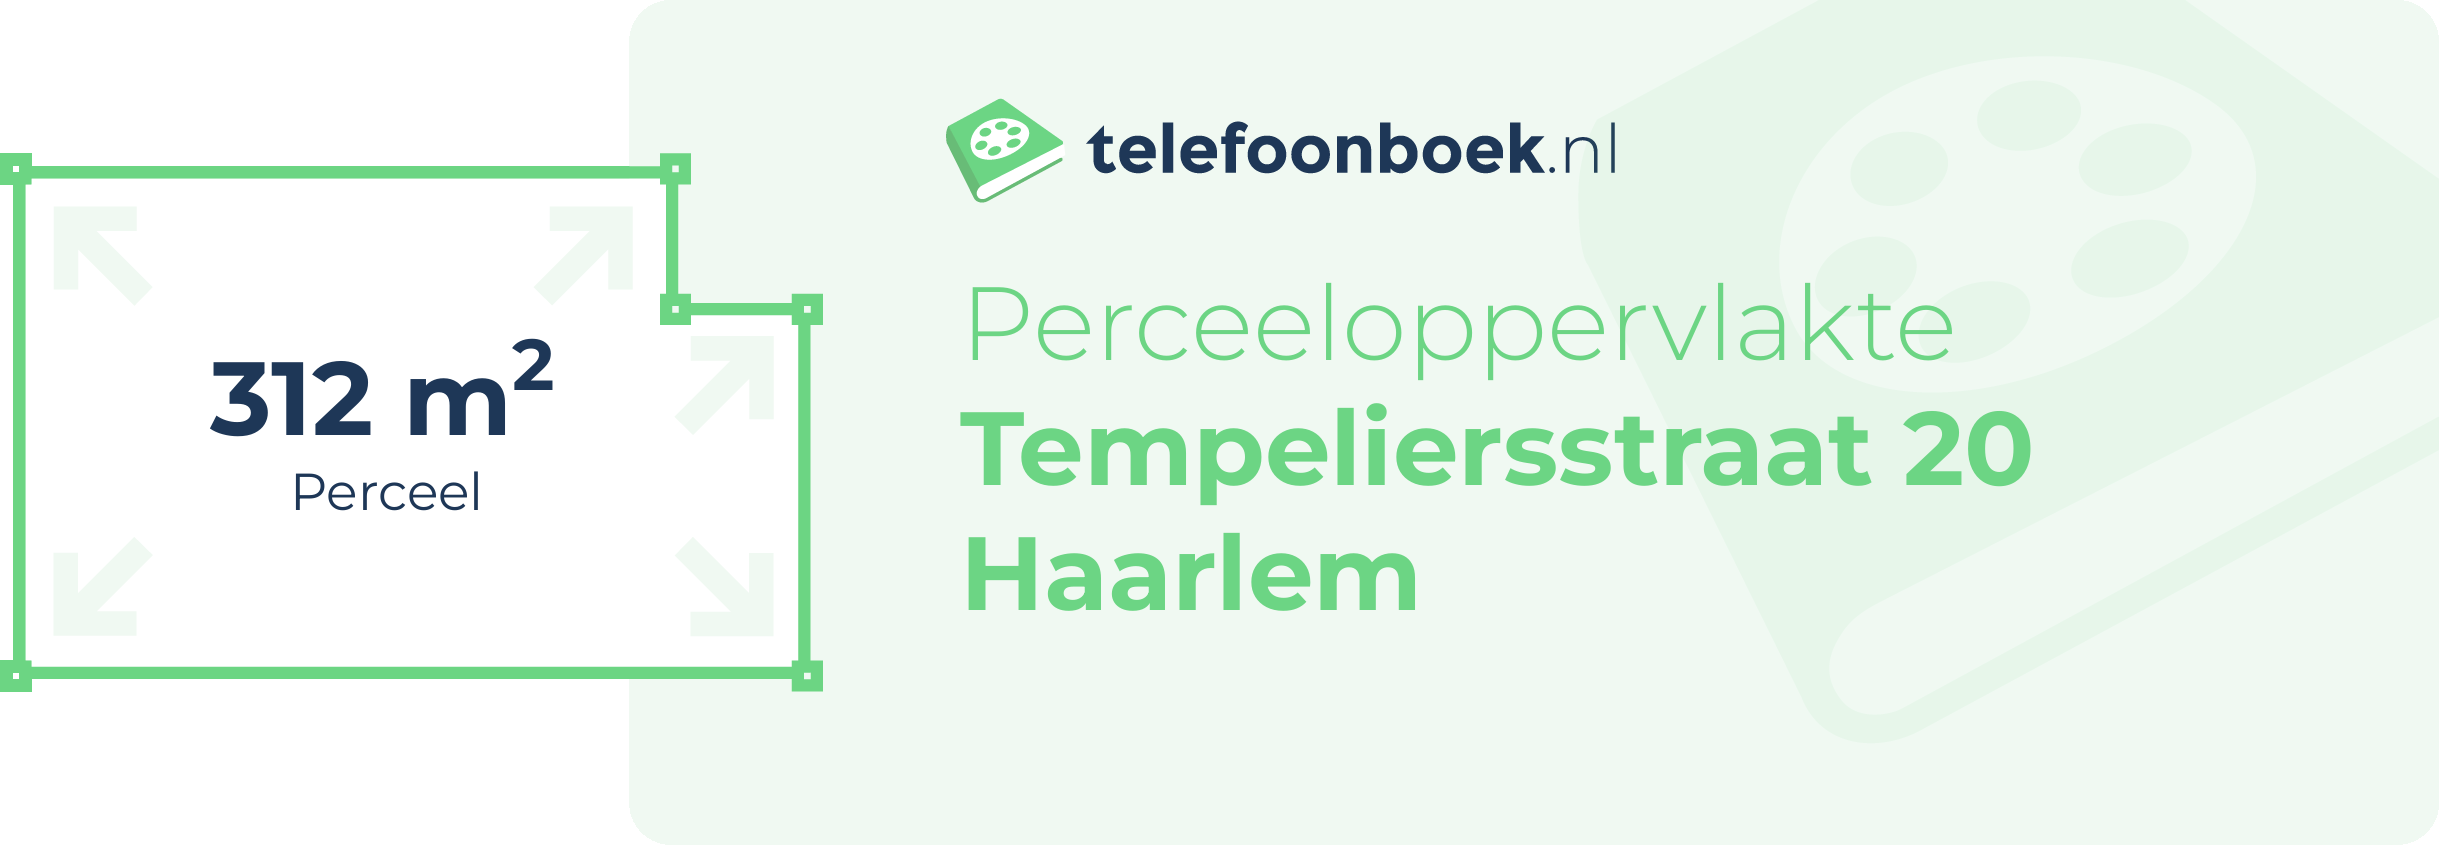 Perceeloppervlakte Tempeliersstraat 20 Haarlem